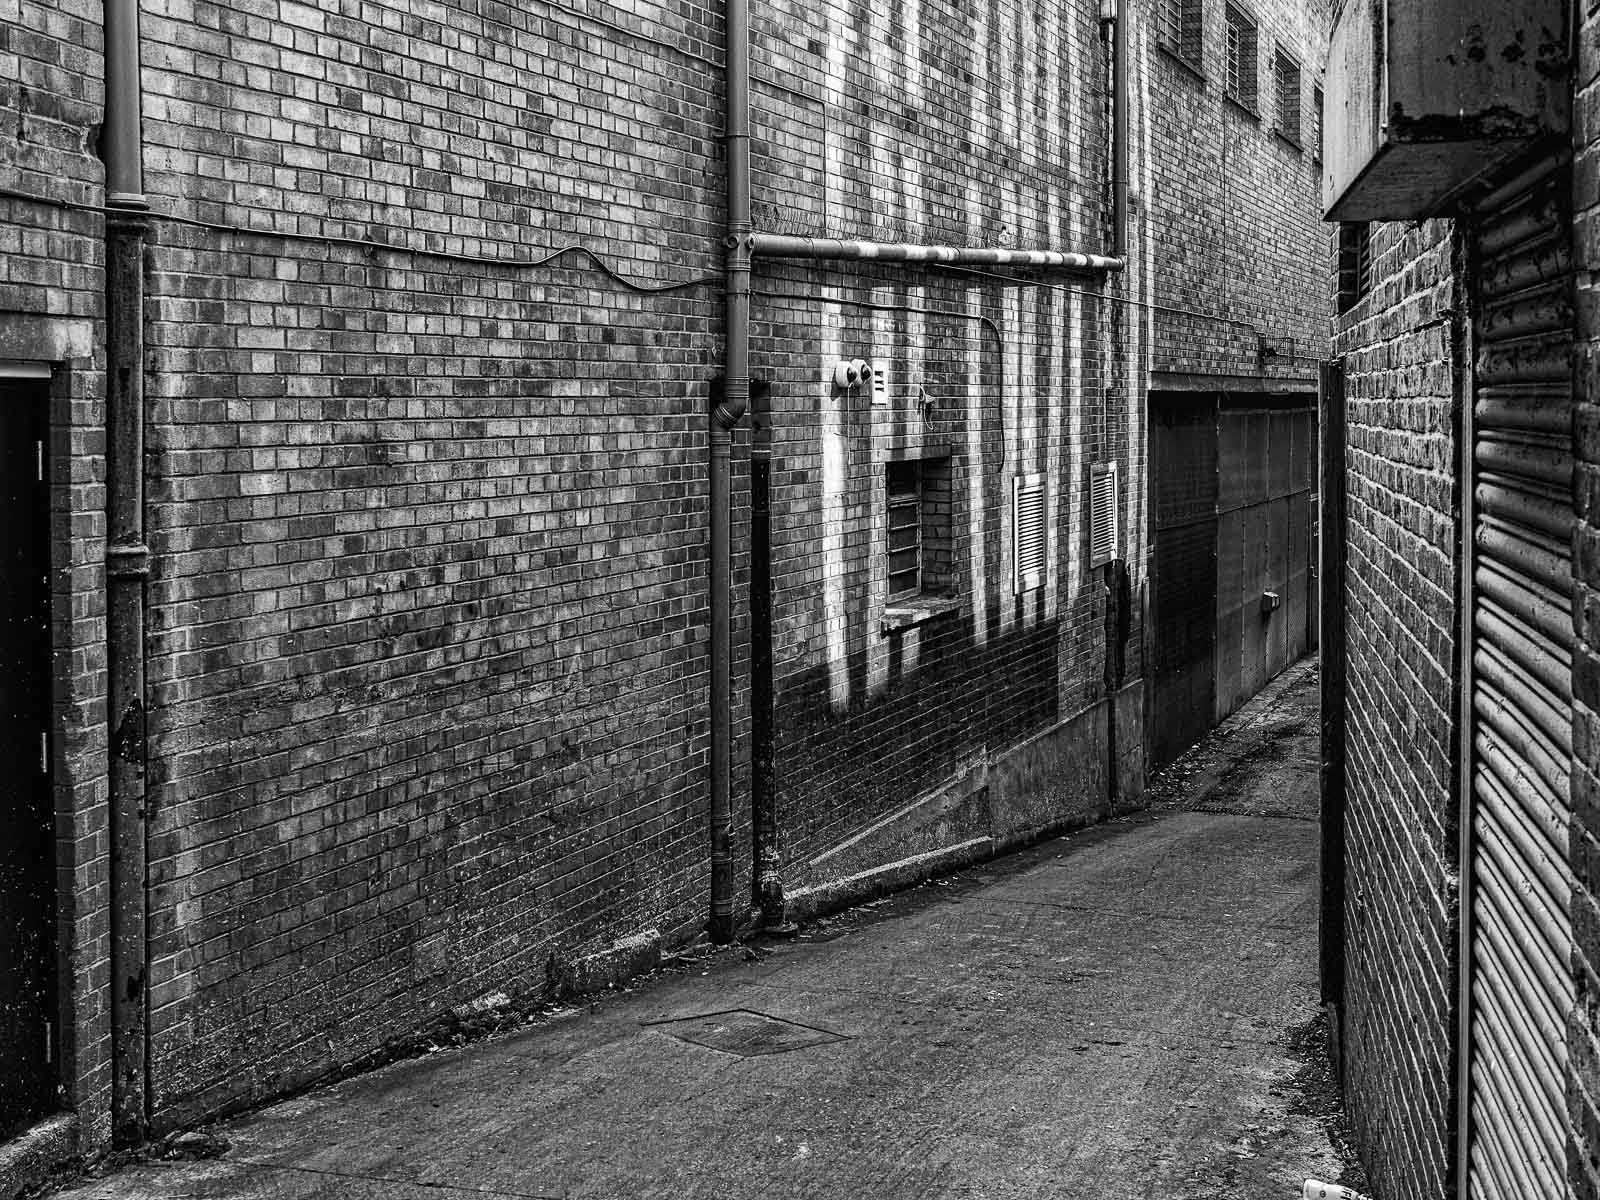 Into the alleyway, Alex Davidson